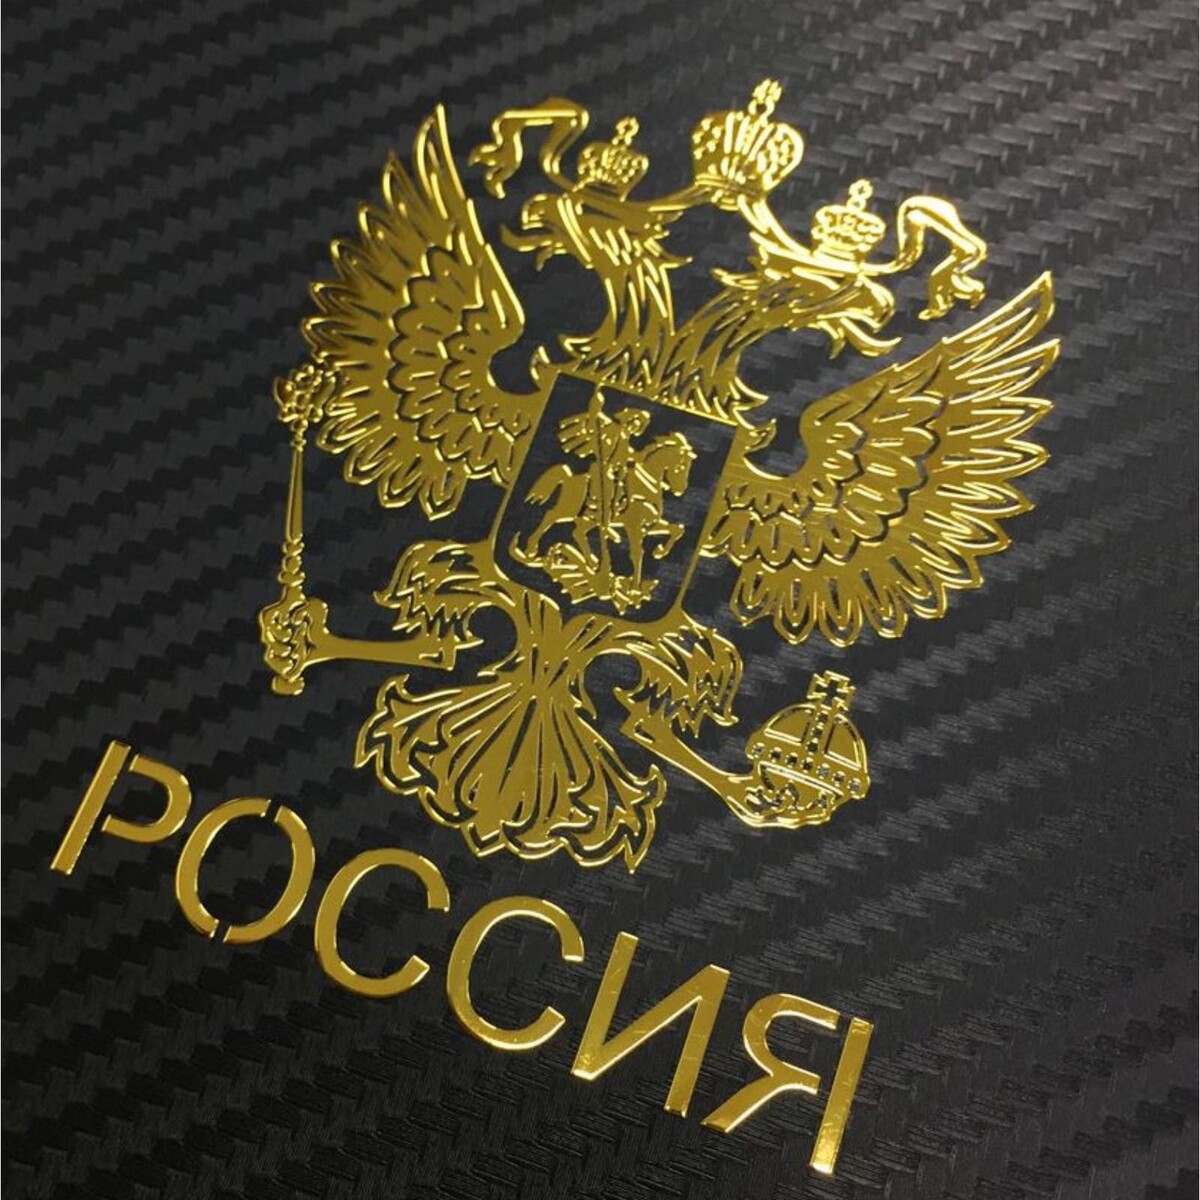 Наклейка на авто, герб россии, 9.1×7 см, золотистый холдингизация агробизнеса россии